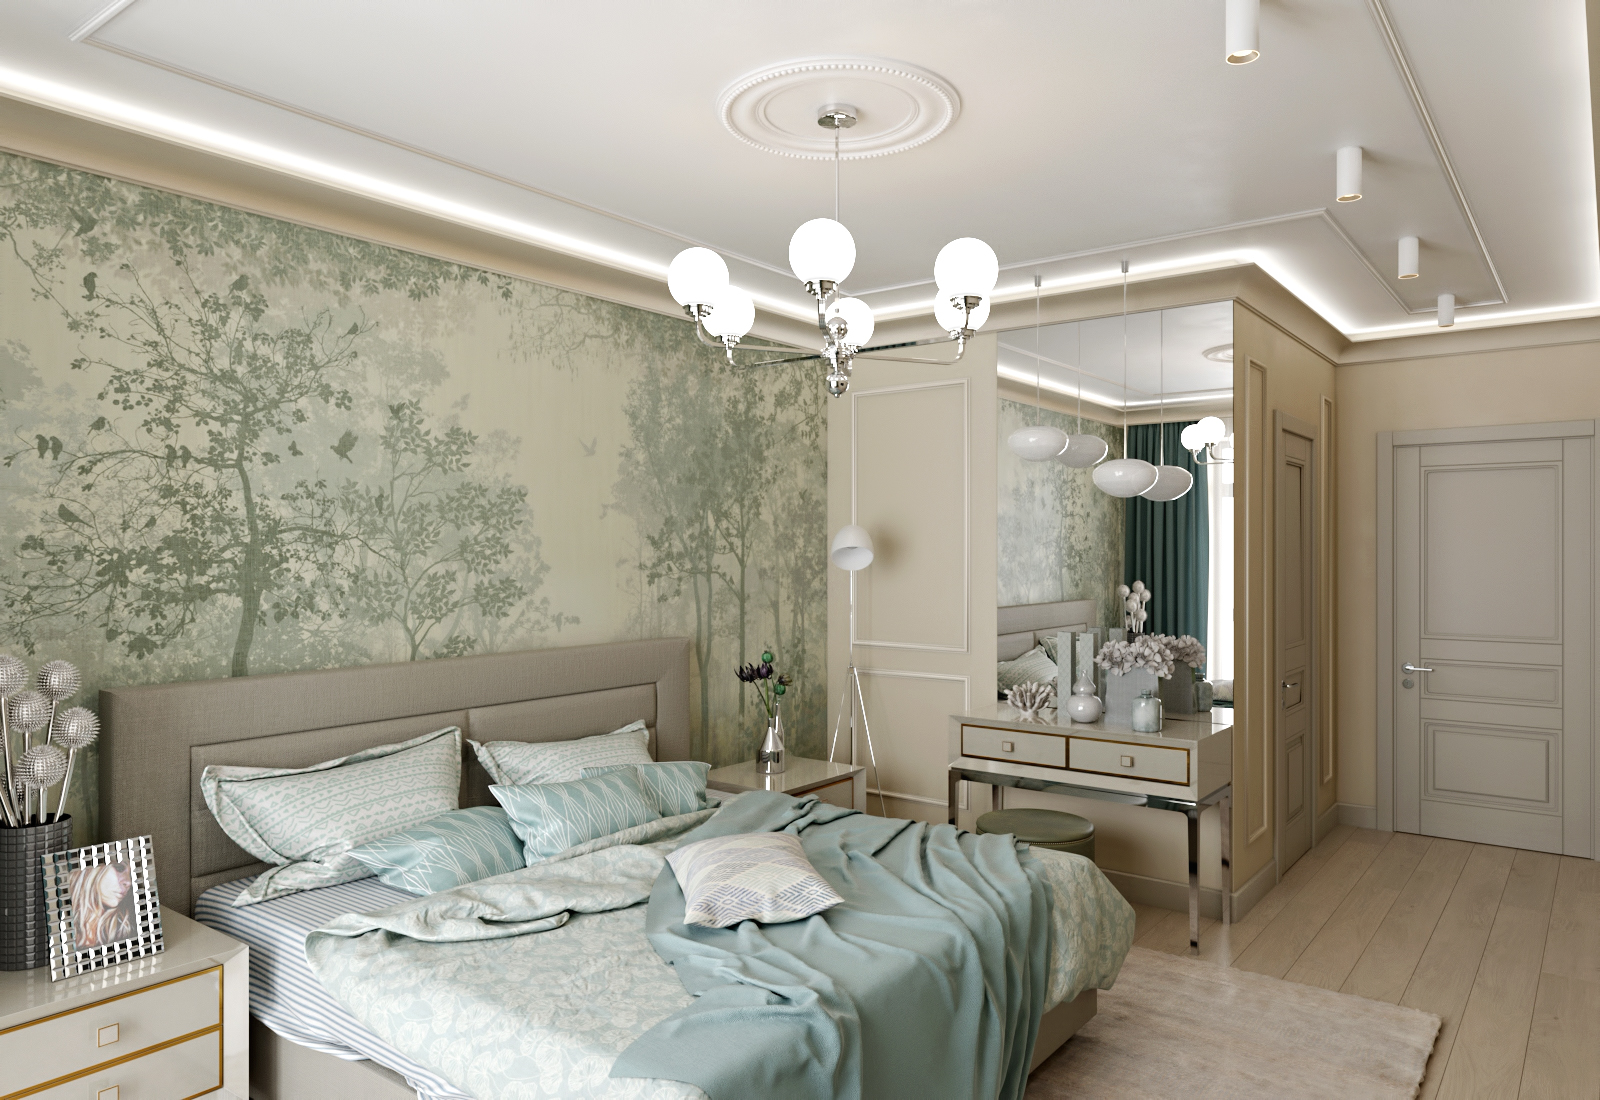 Bedroom в 3d max corona render изображение